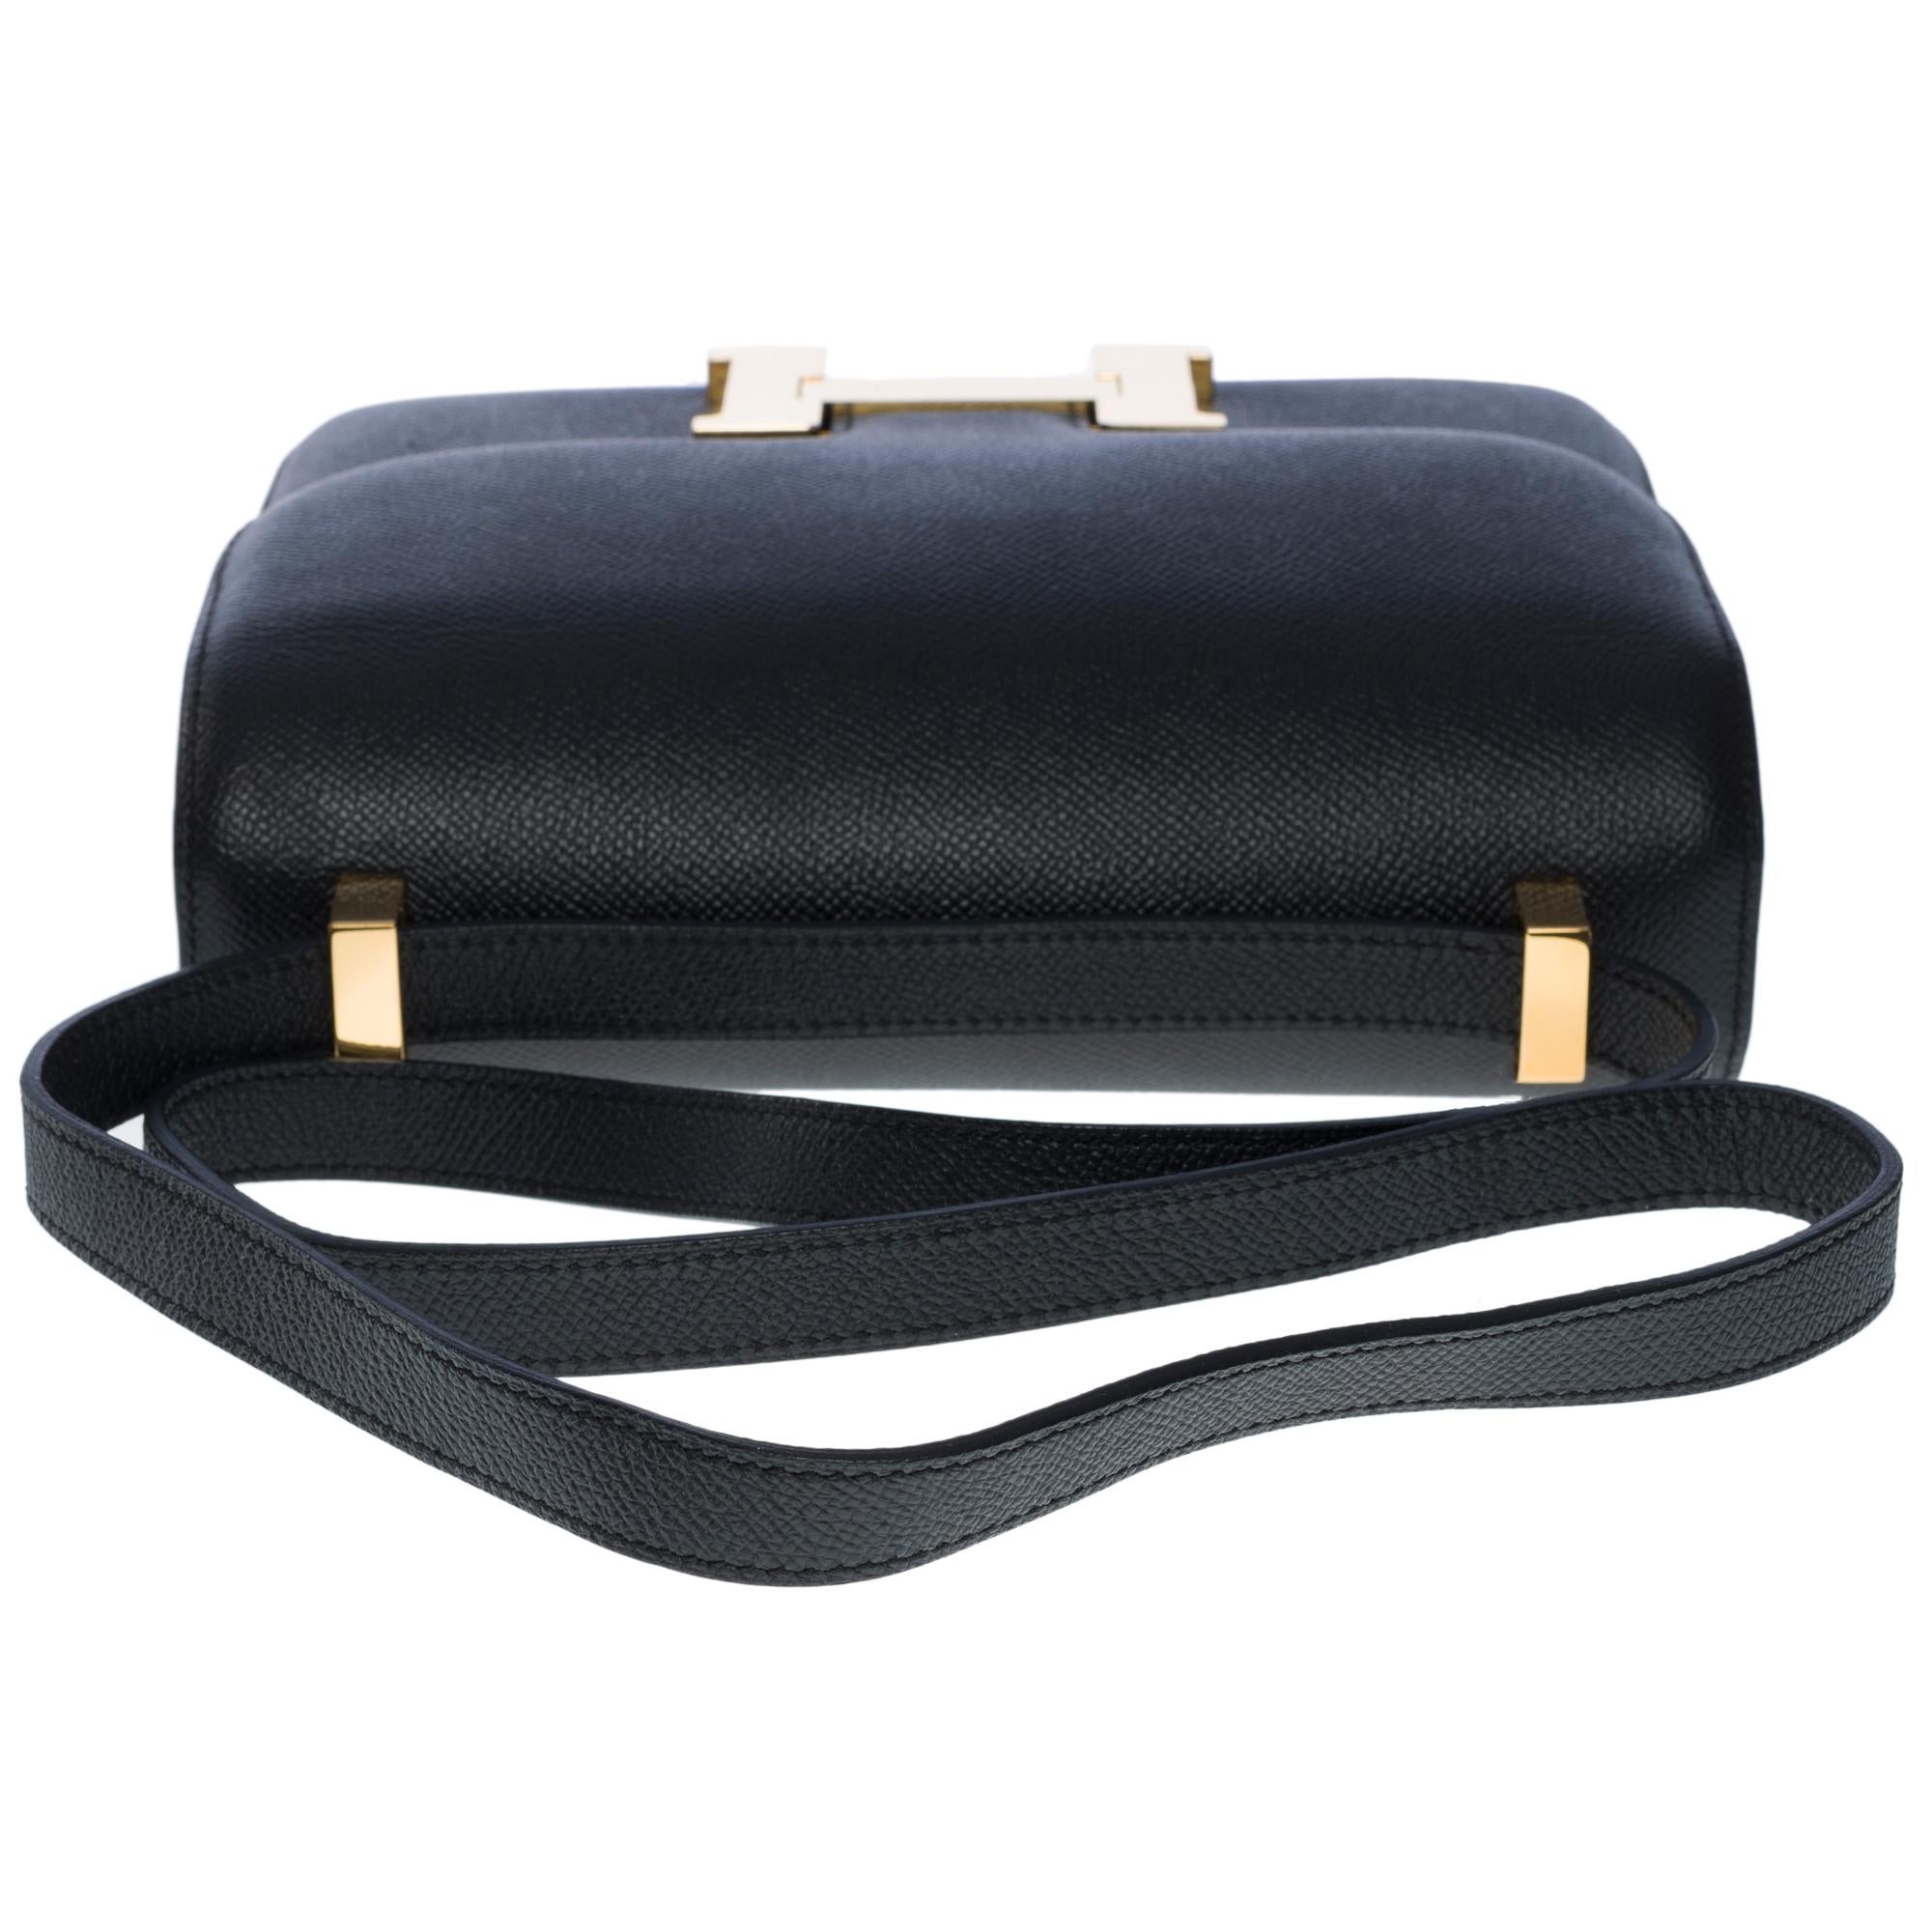 Gorgeous Hermès Constance shoulder bag in black epsom leather , GHW 5